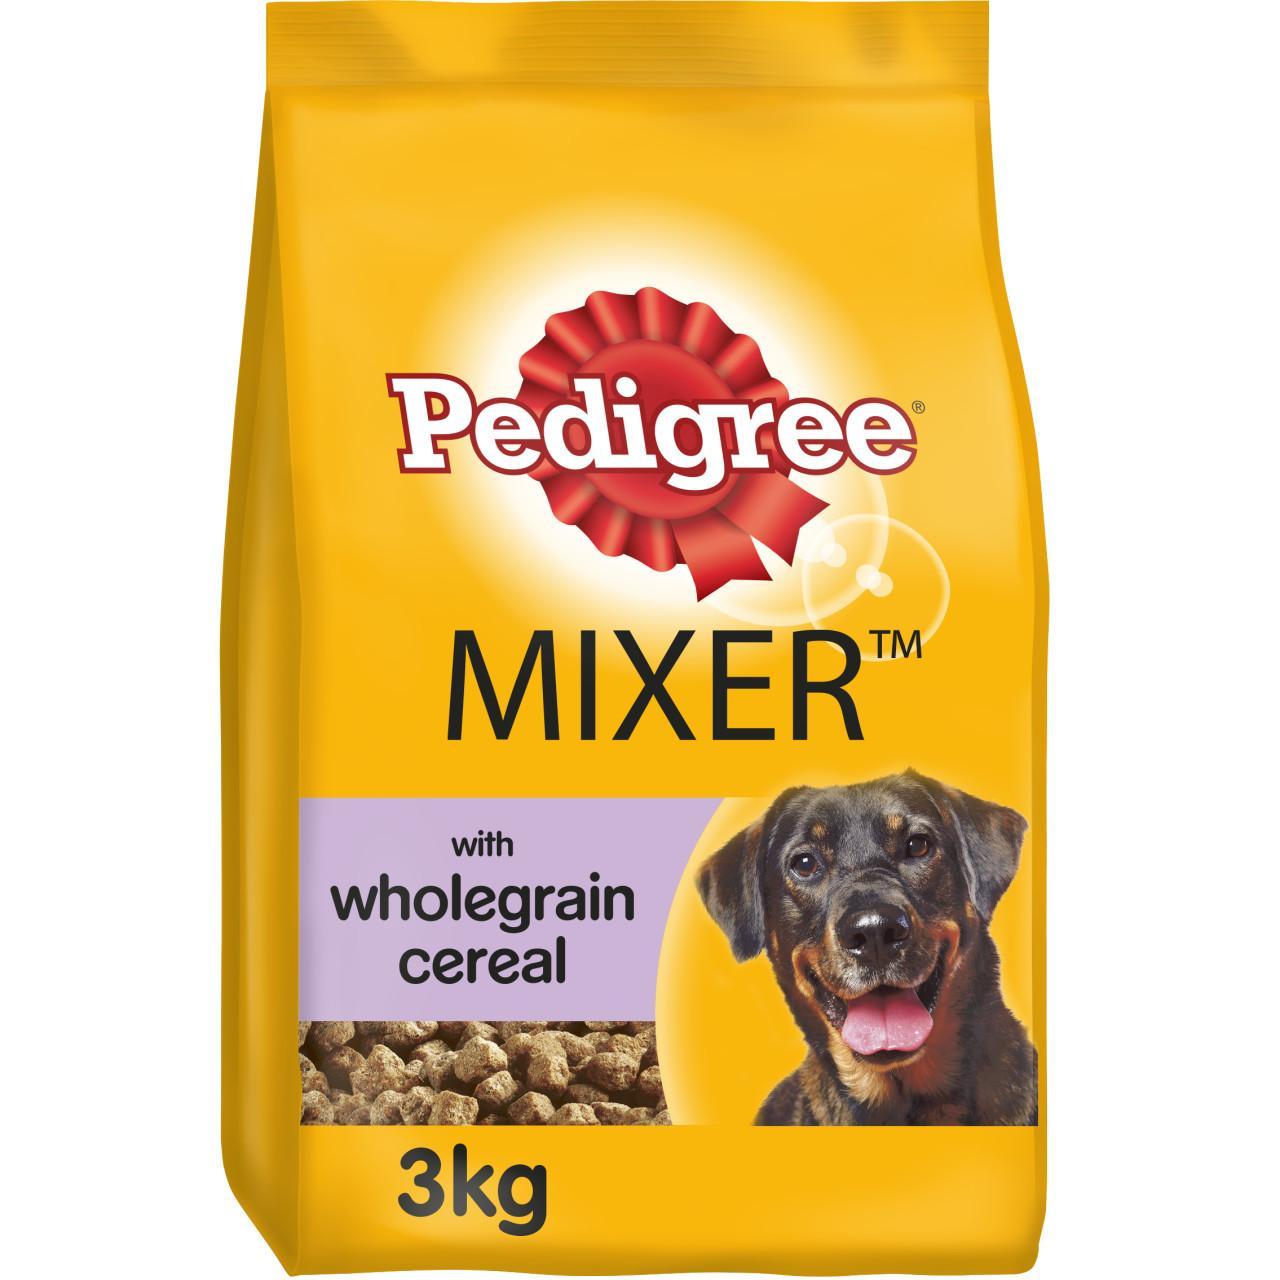 An image of Pedigree Dog Mixer Original